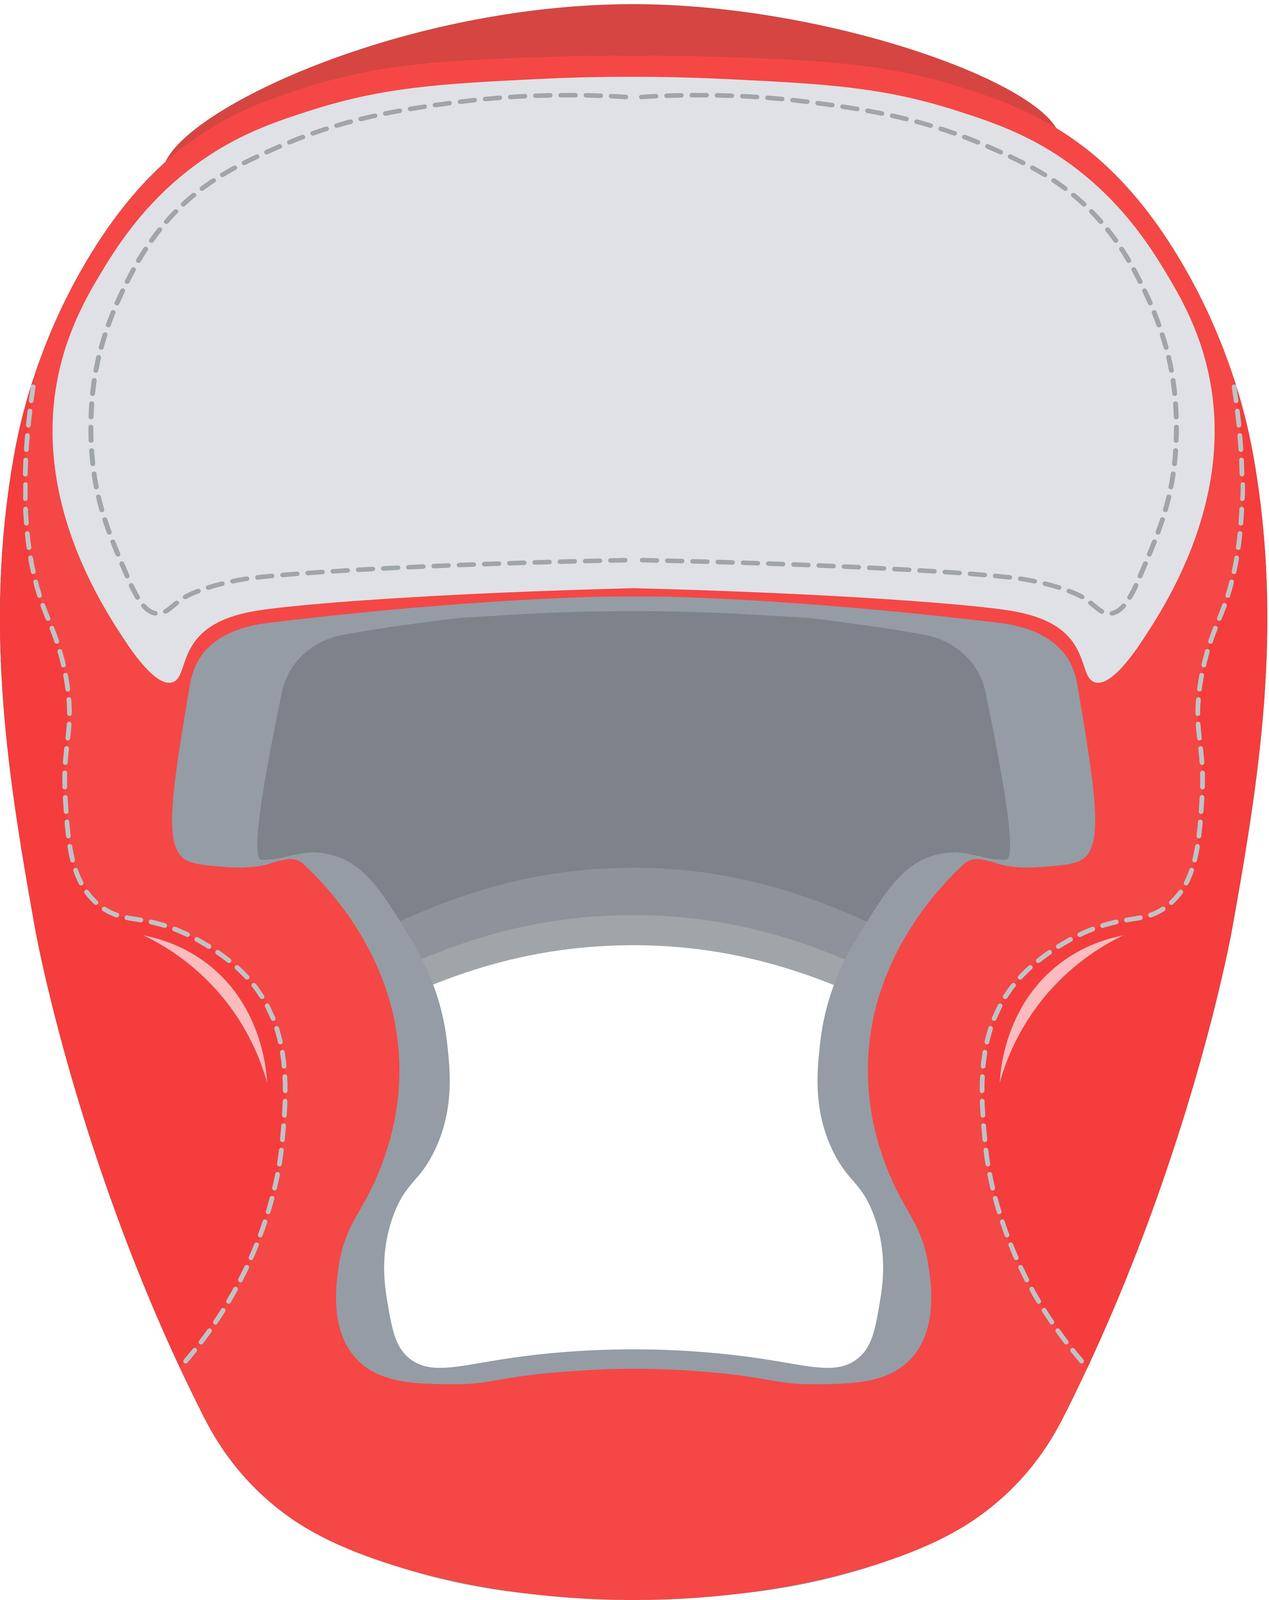 Boxing helmet vector illustration. Boxing helmet isolated on white background